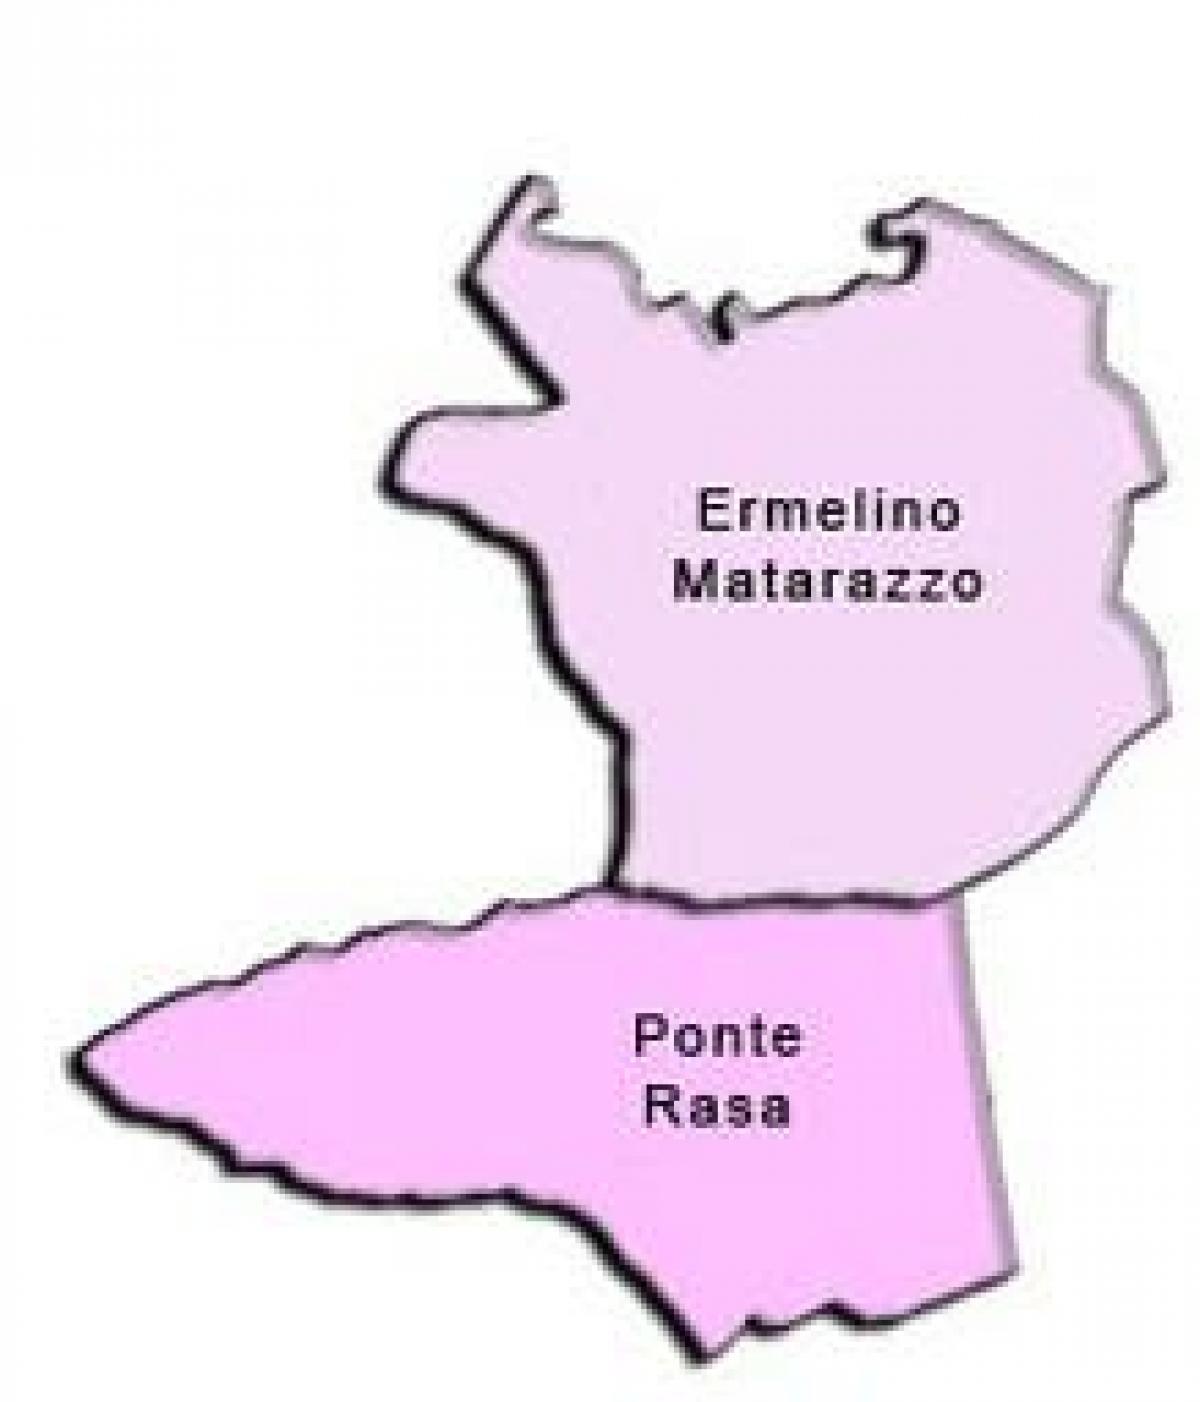 نقشه ارملینو مترززو آدور